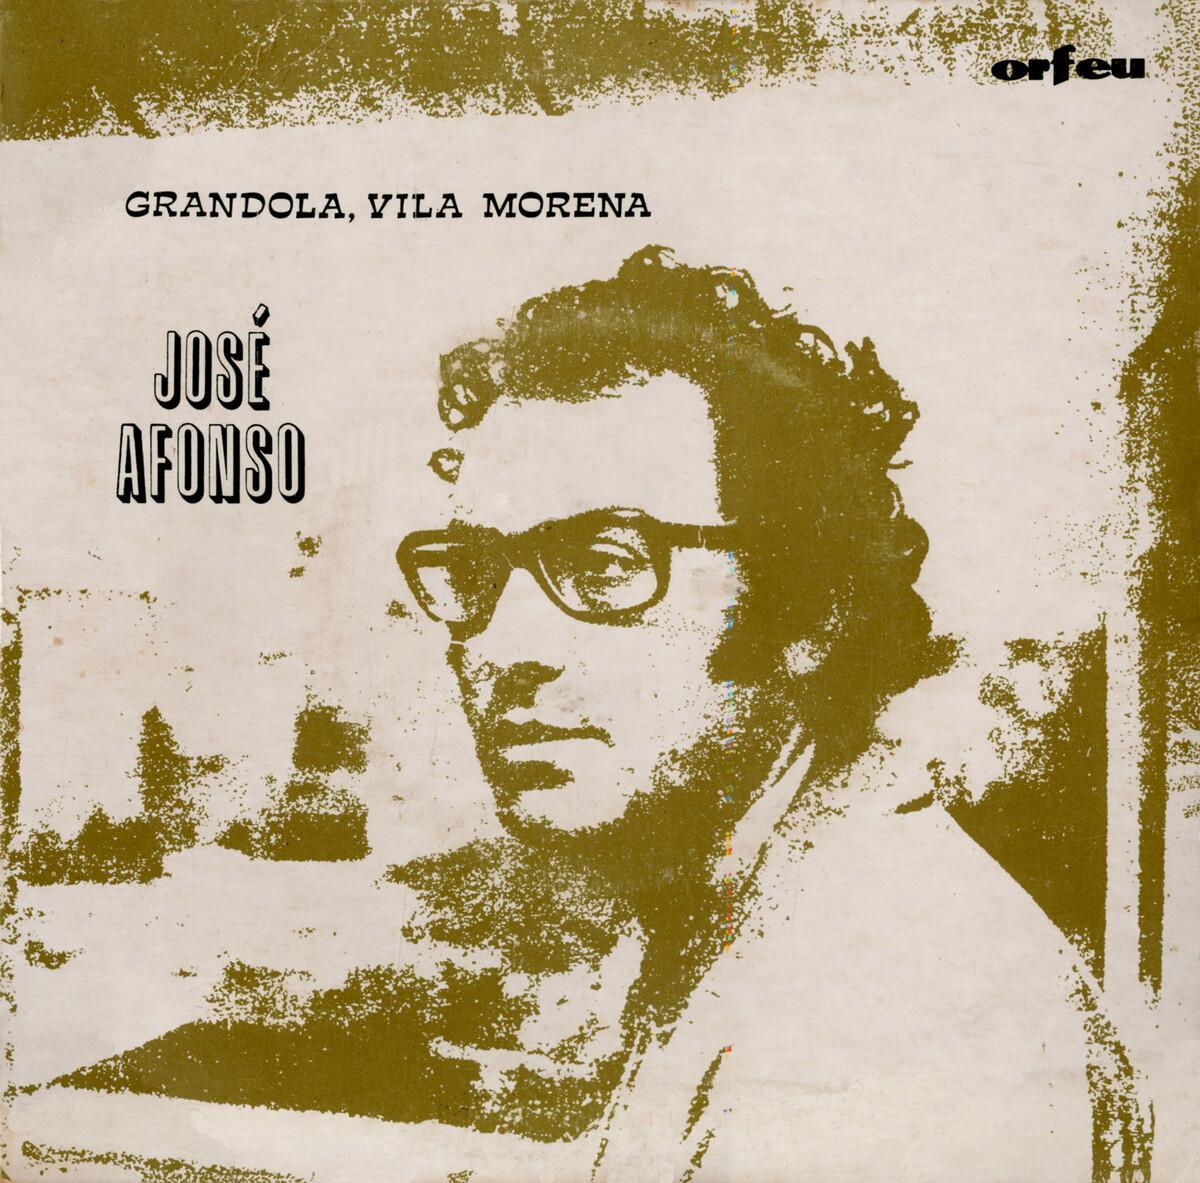 Disco EP de 1973 con ‘Grándola vila morena’, de José Afonso